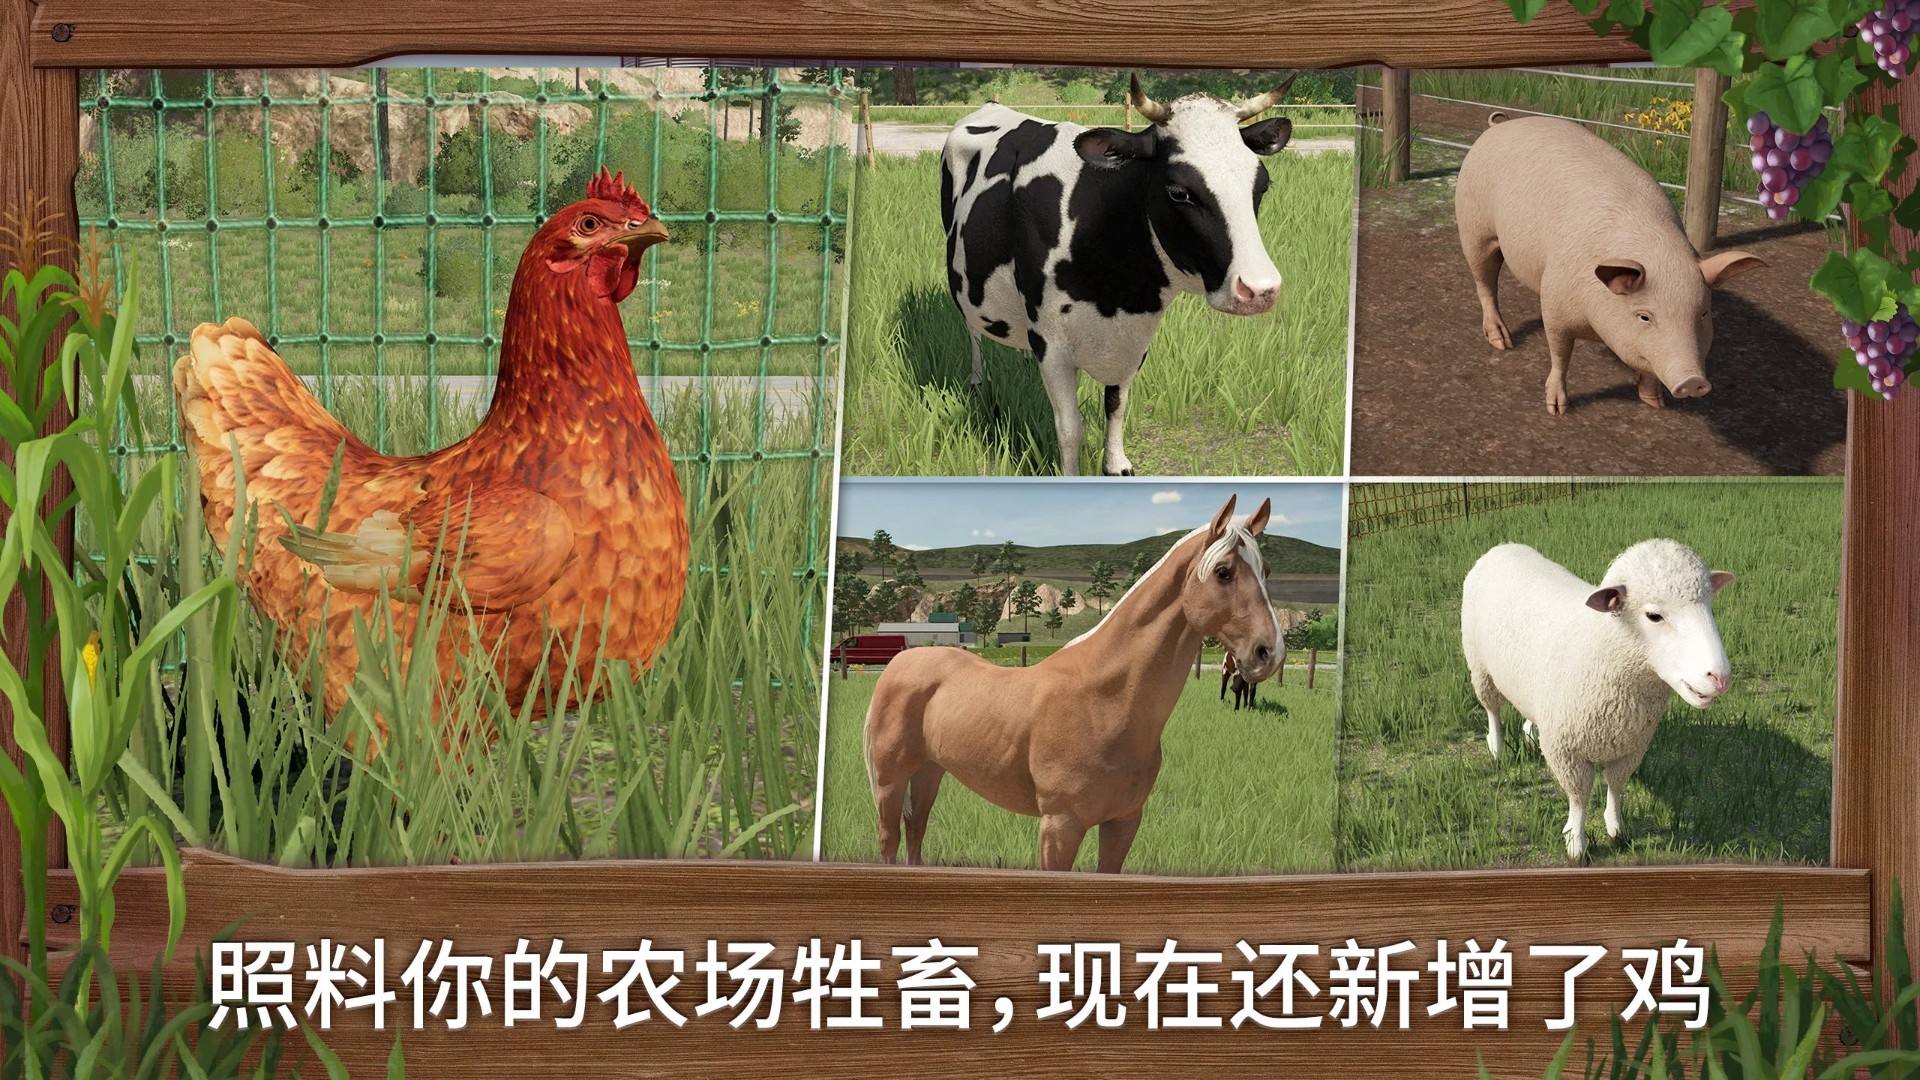 模拟农场23中文解锁版截图